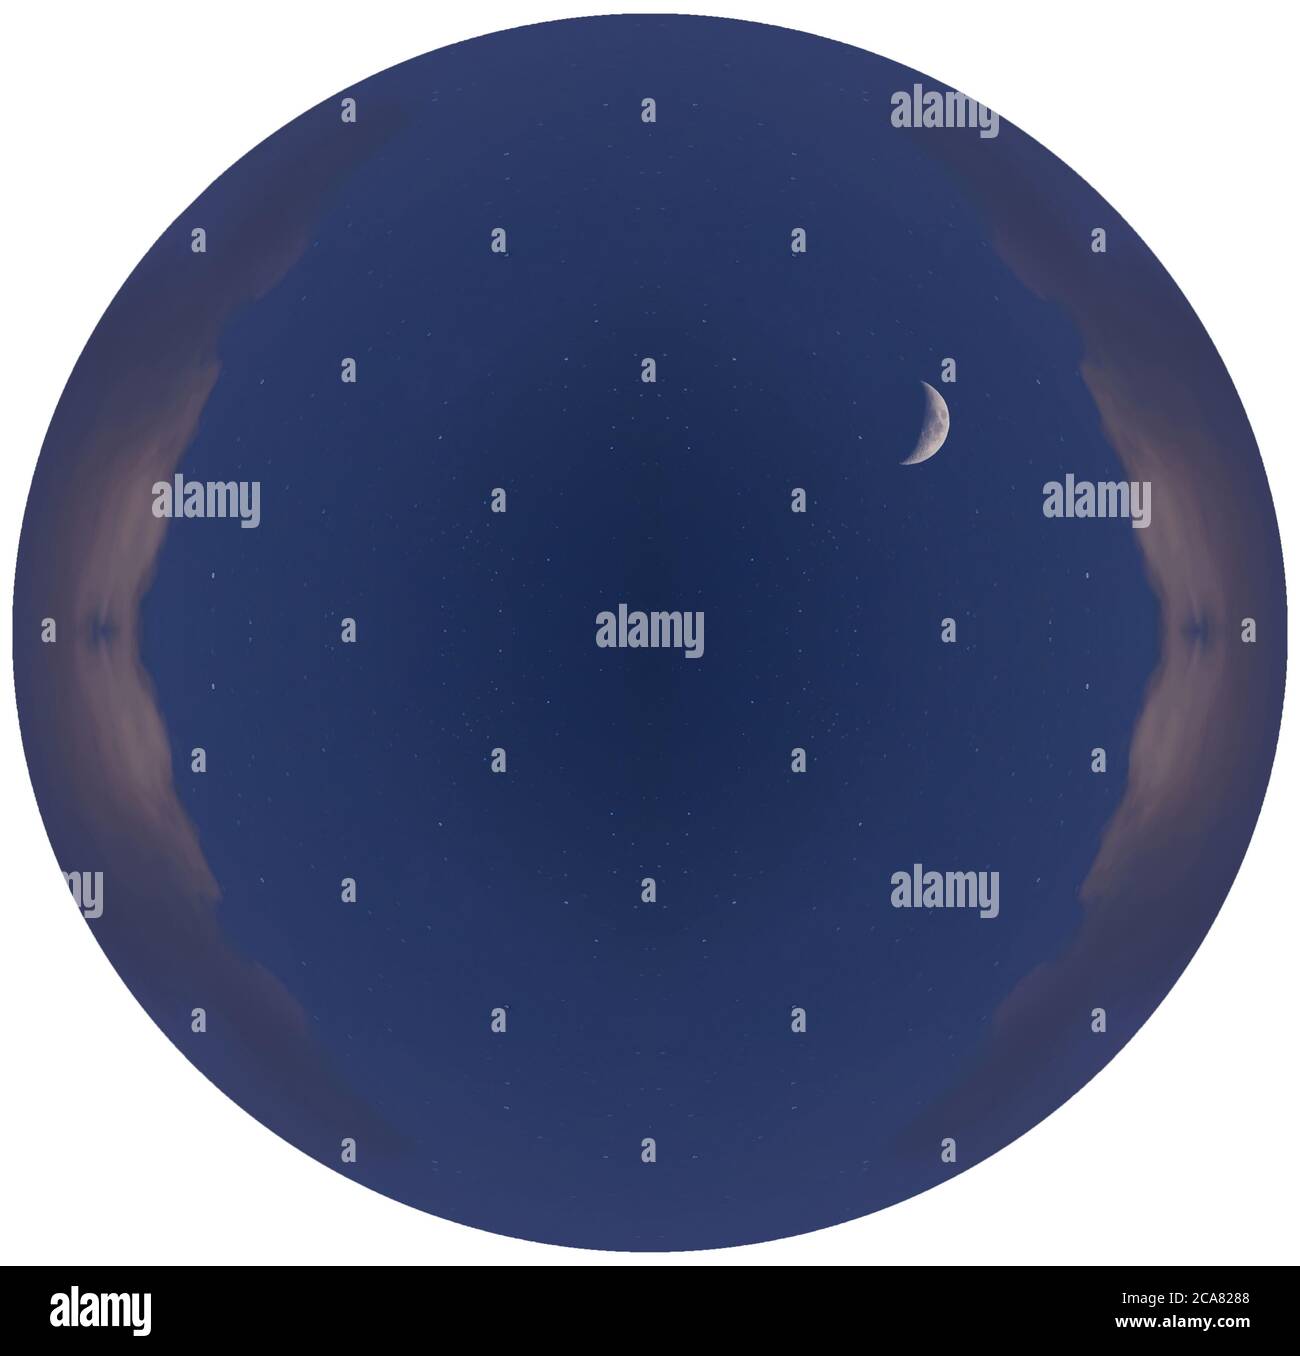 Una fotografia di un paesaggio notturno trasformato in un cerchio con bordi isolati. Cielo stellato blu scuro, vista di una luna luminosa e alcune piccole nuvole. Foto Stock